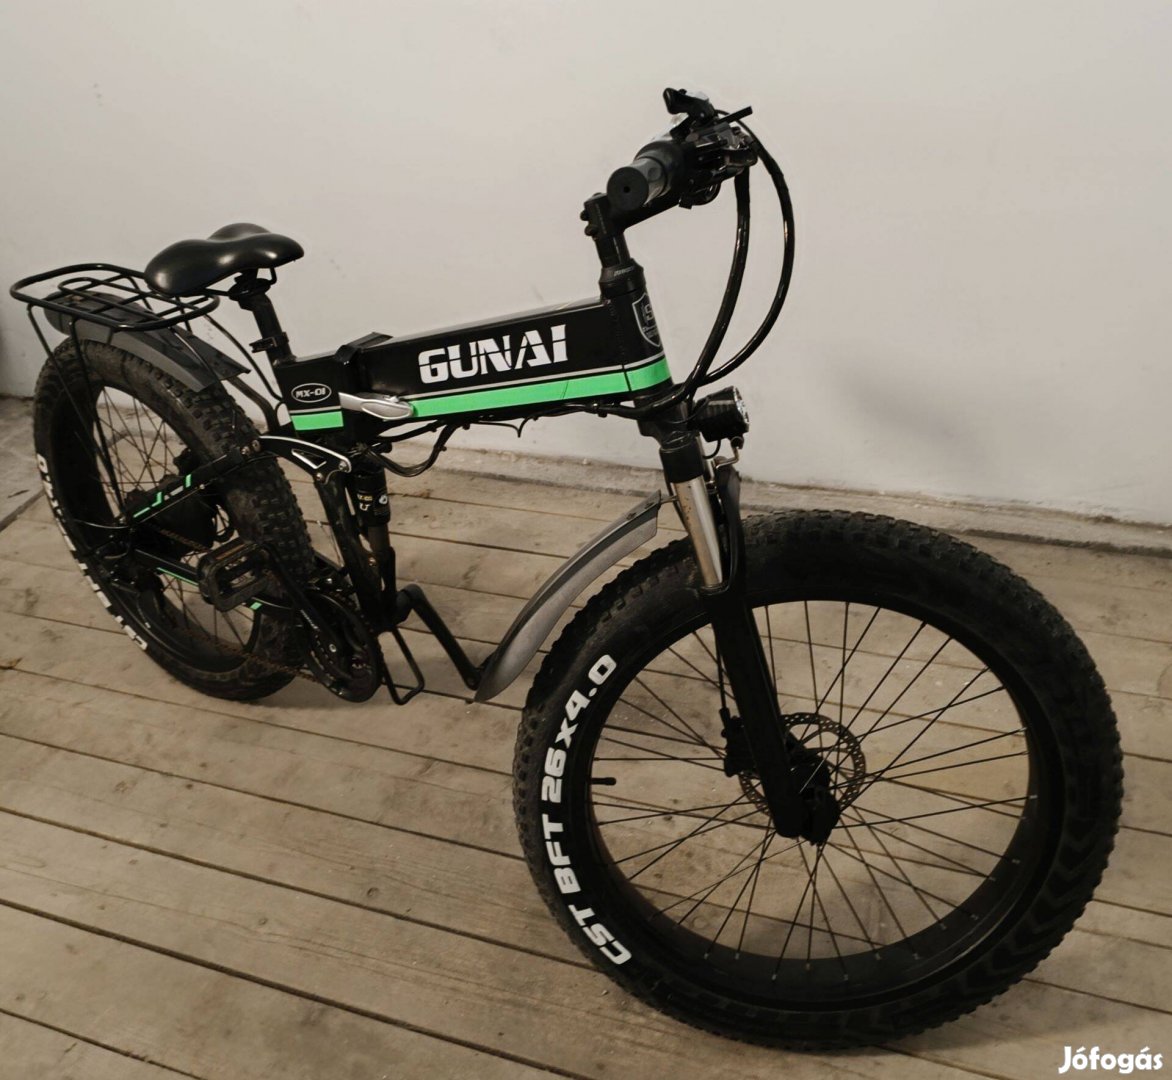 Elektromos kerékpár fatbike, Gunai MX-01